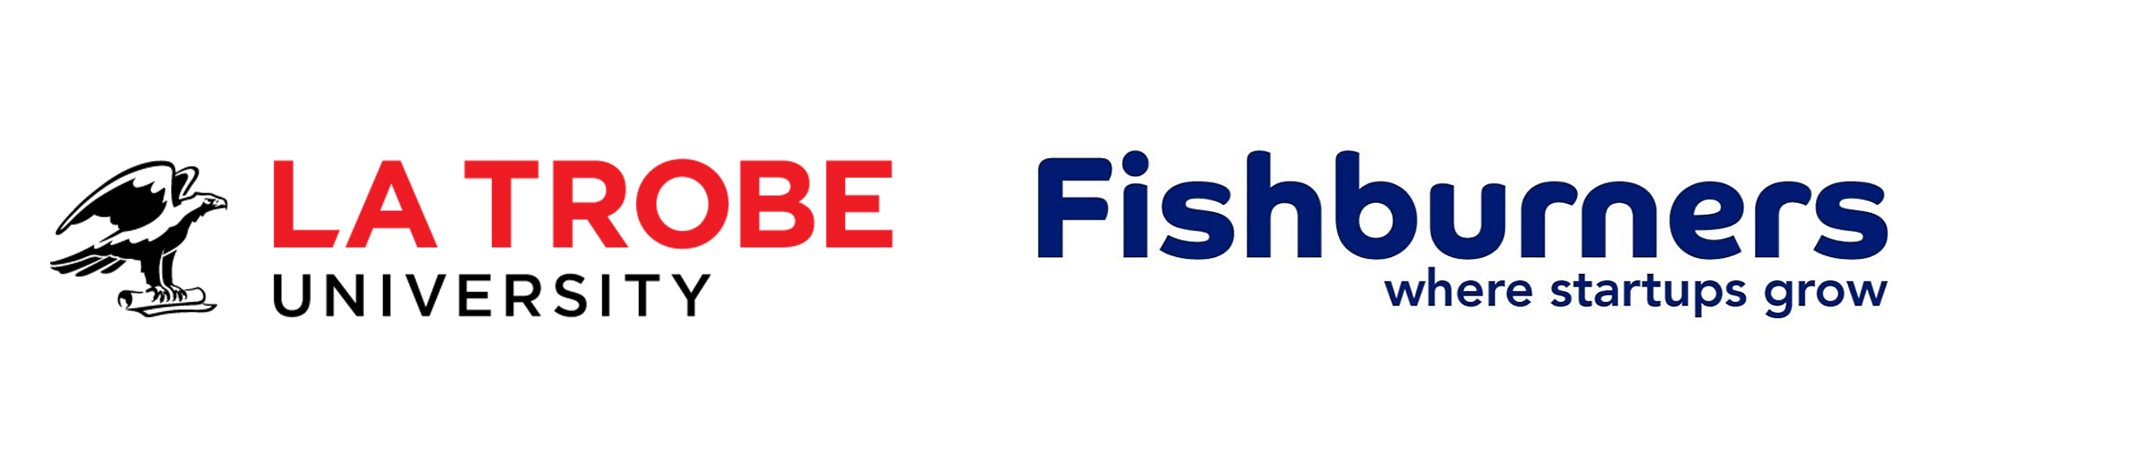 La Trobe and Fishburners logos